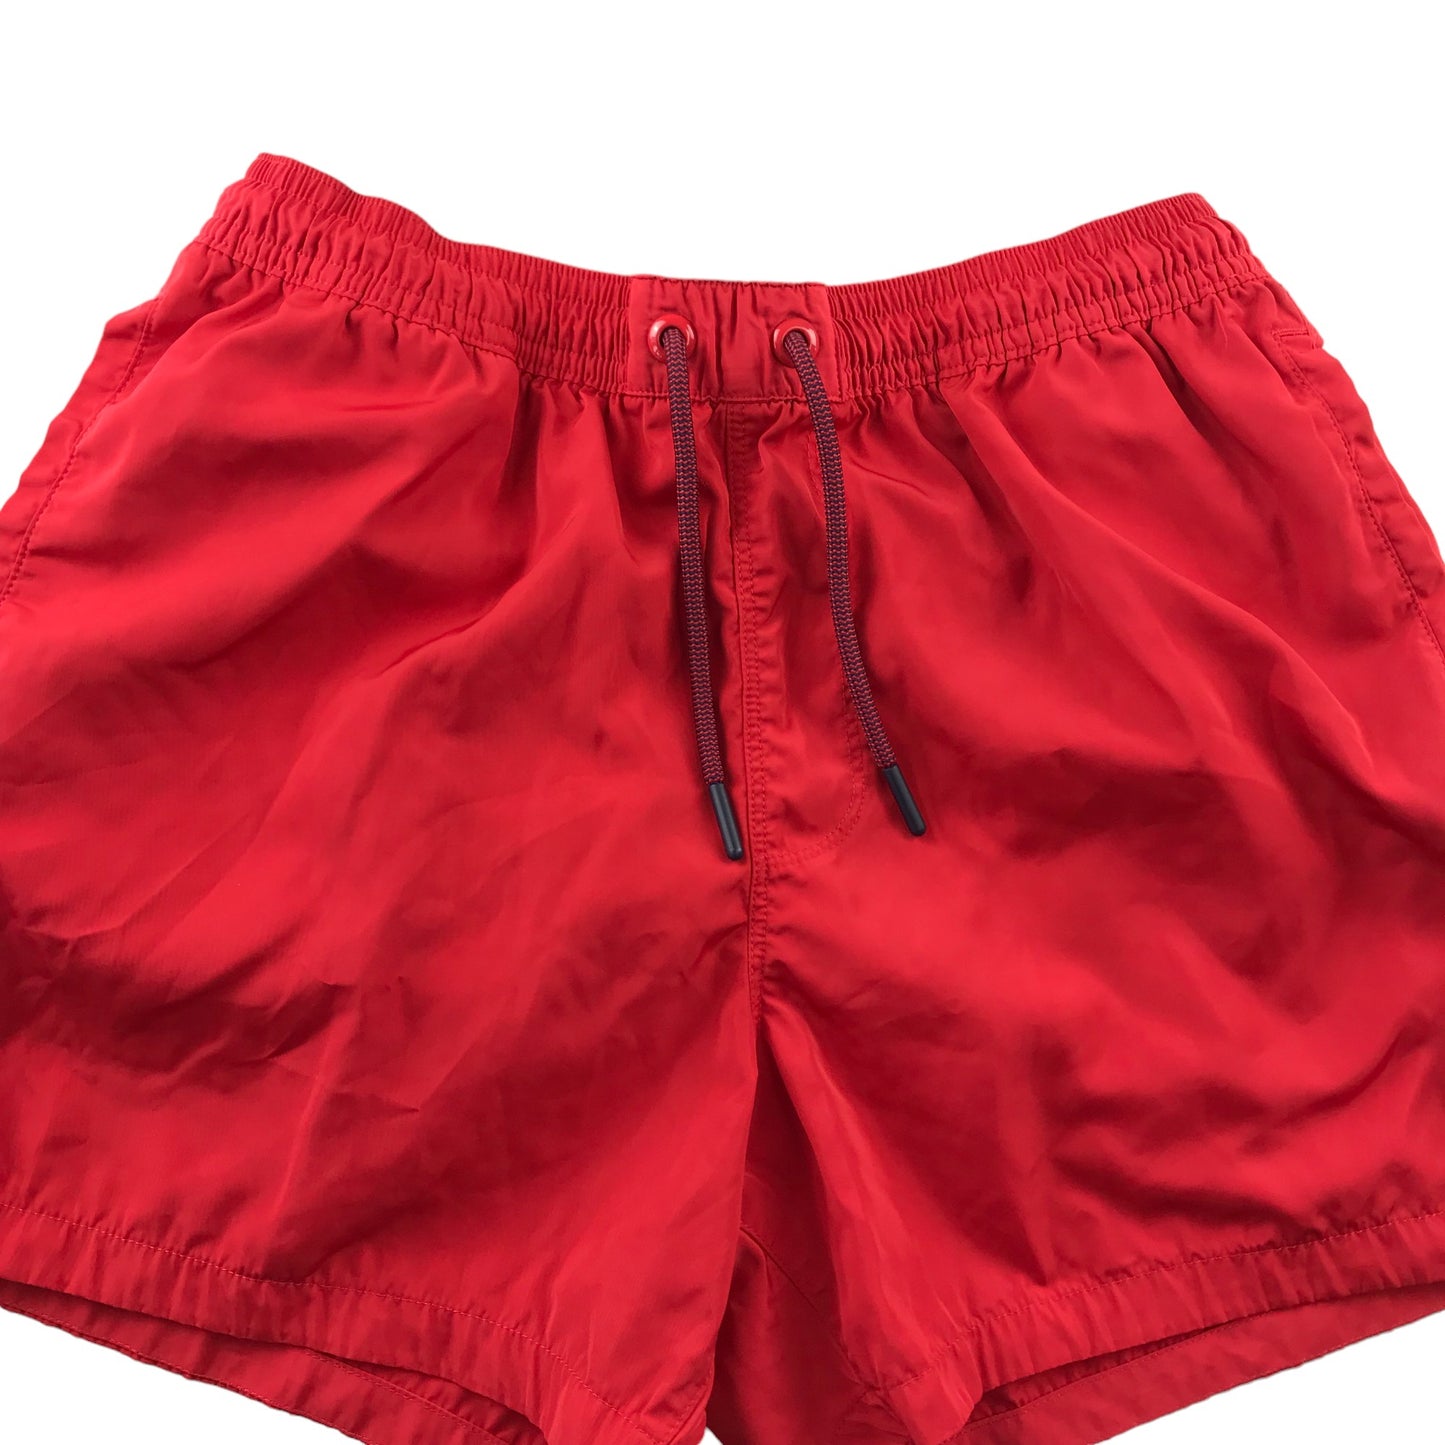 Oiler & Boiler Swim Trunks Size Men S Red Plain Shorts